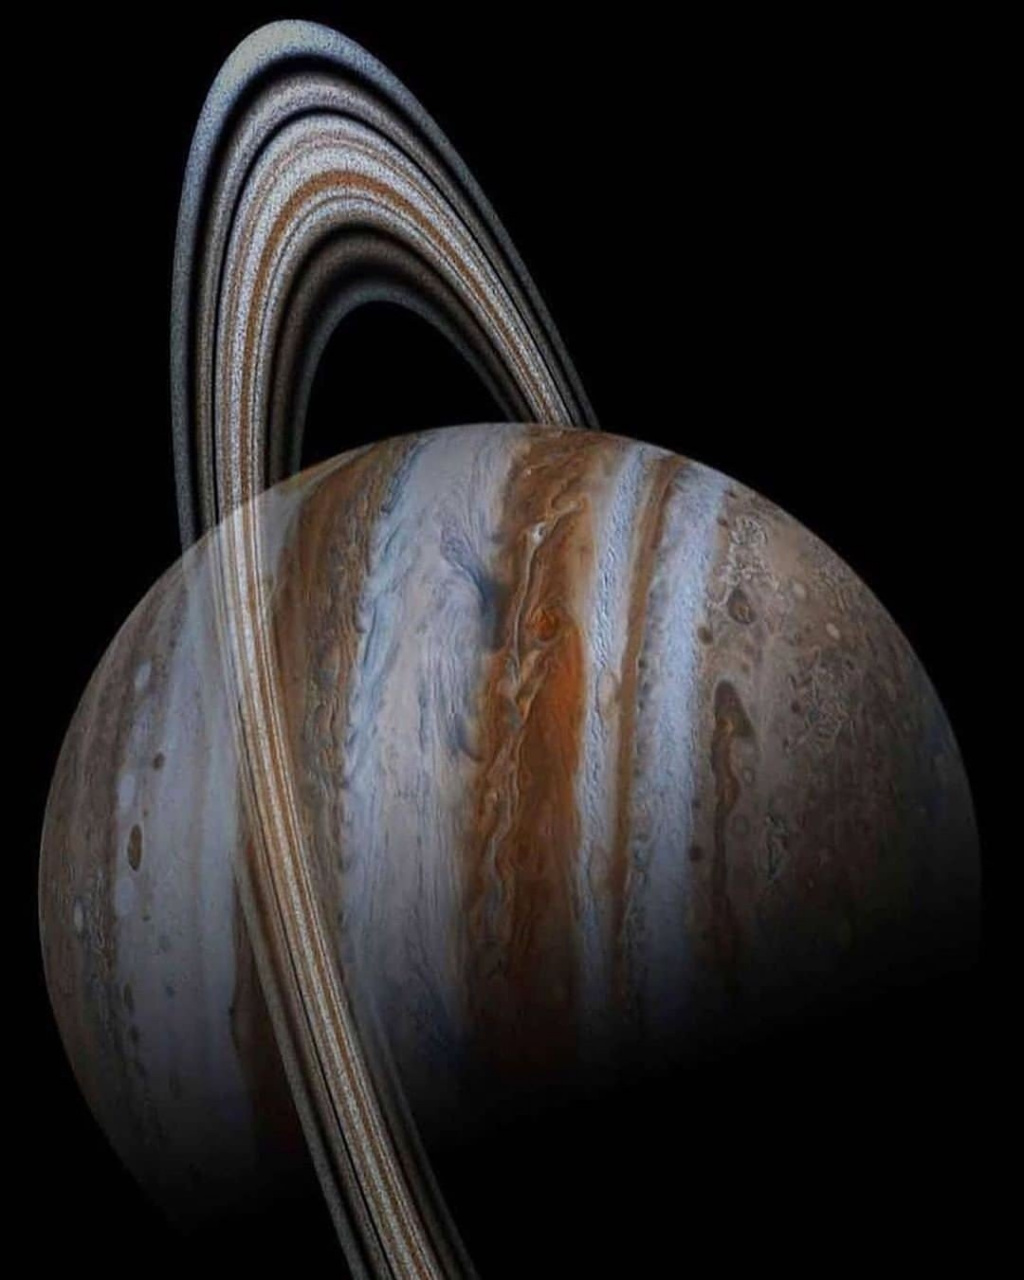 木星环首次被观测到是在1979年,由航海家一号发现及在1990年代受到